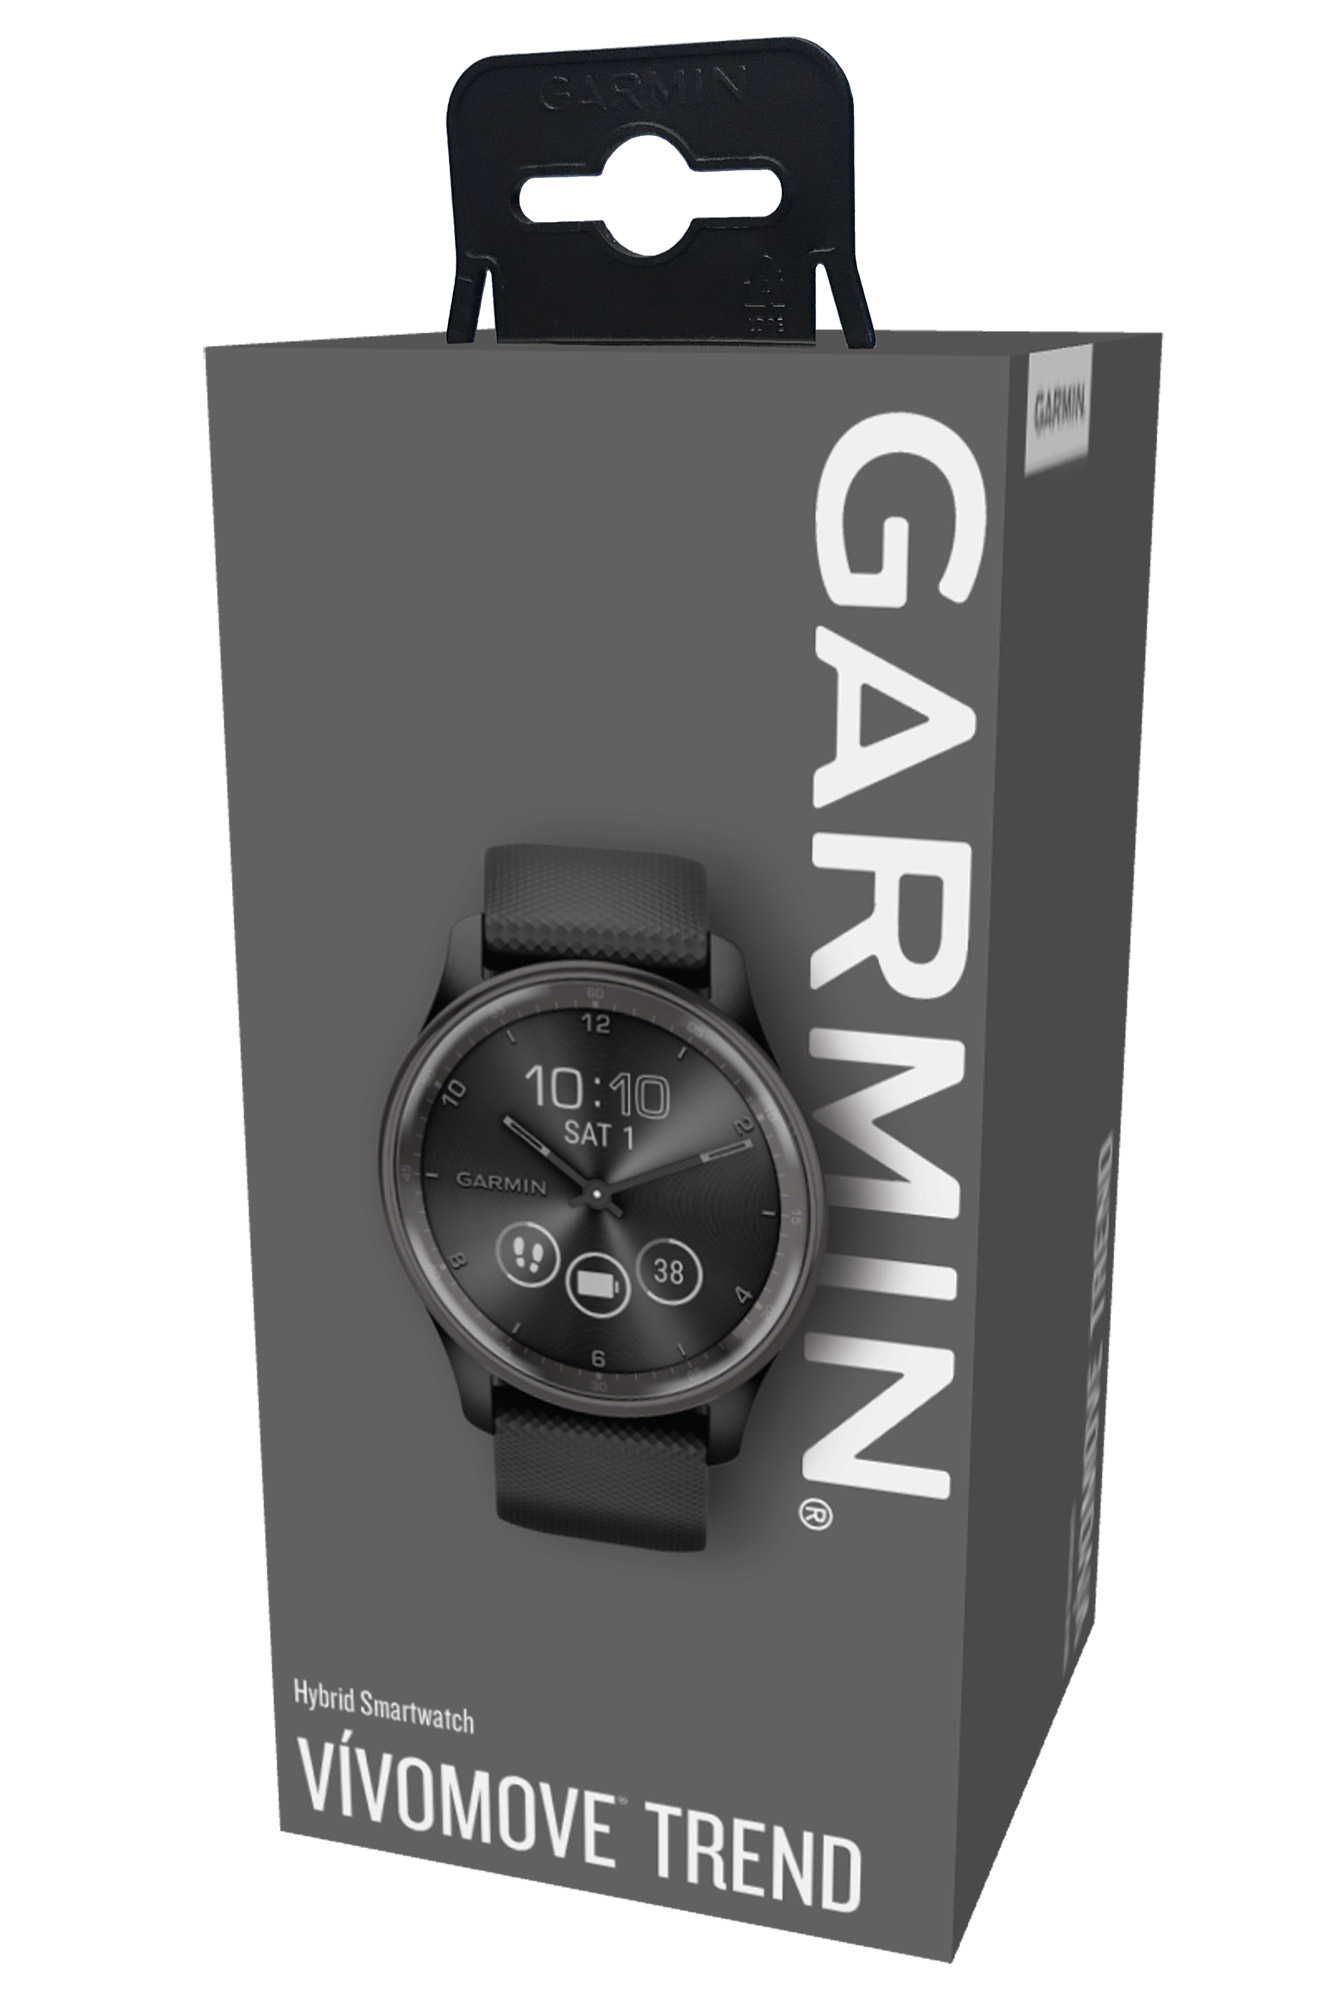 Garmin vivomove Trend uhrcenter 010-02665-00 Schwarz/Schiefergrau Damen-Smartwatch •